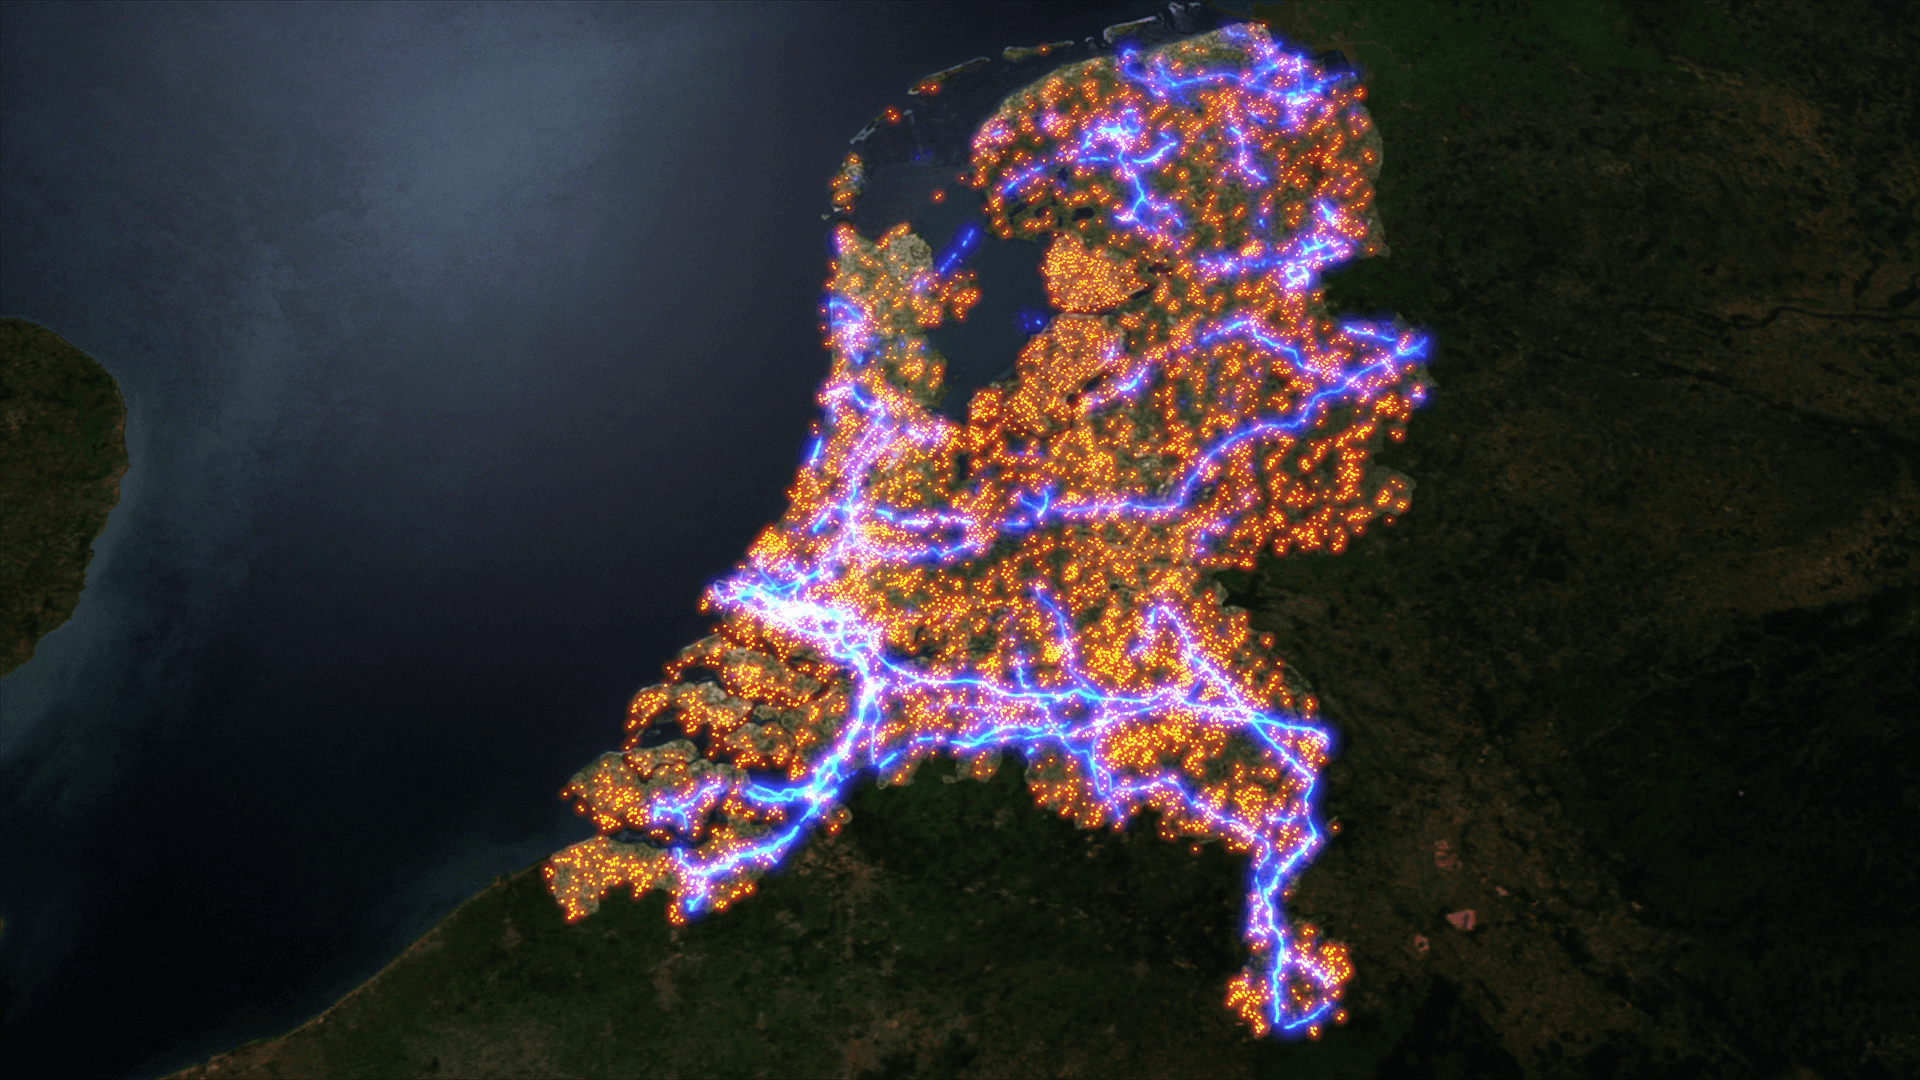  High risk locations in the Netherlands. Source VPRO, Nederland van Boven 